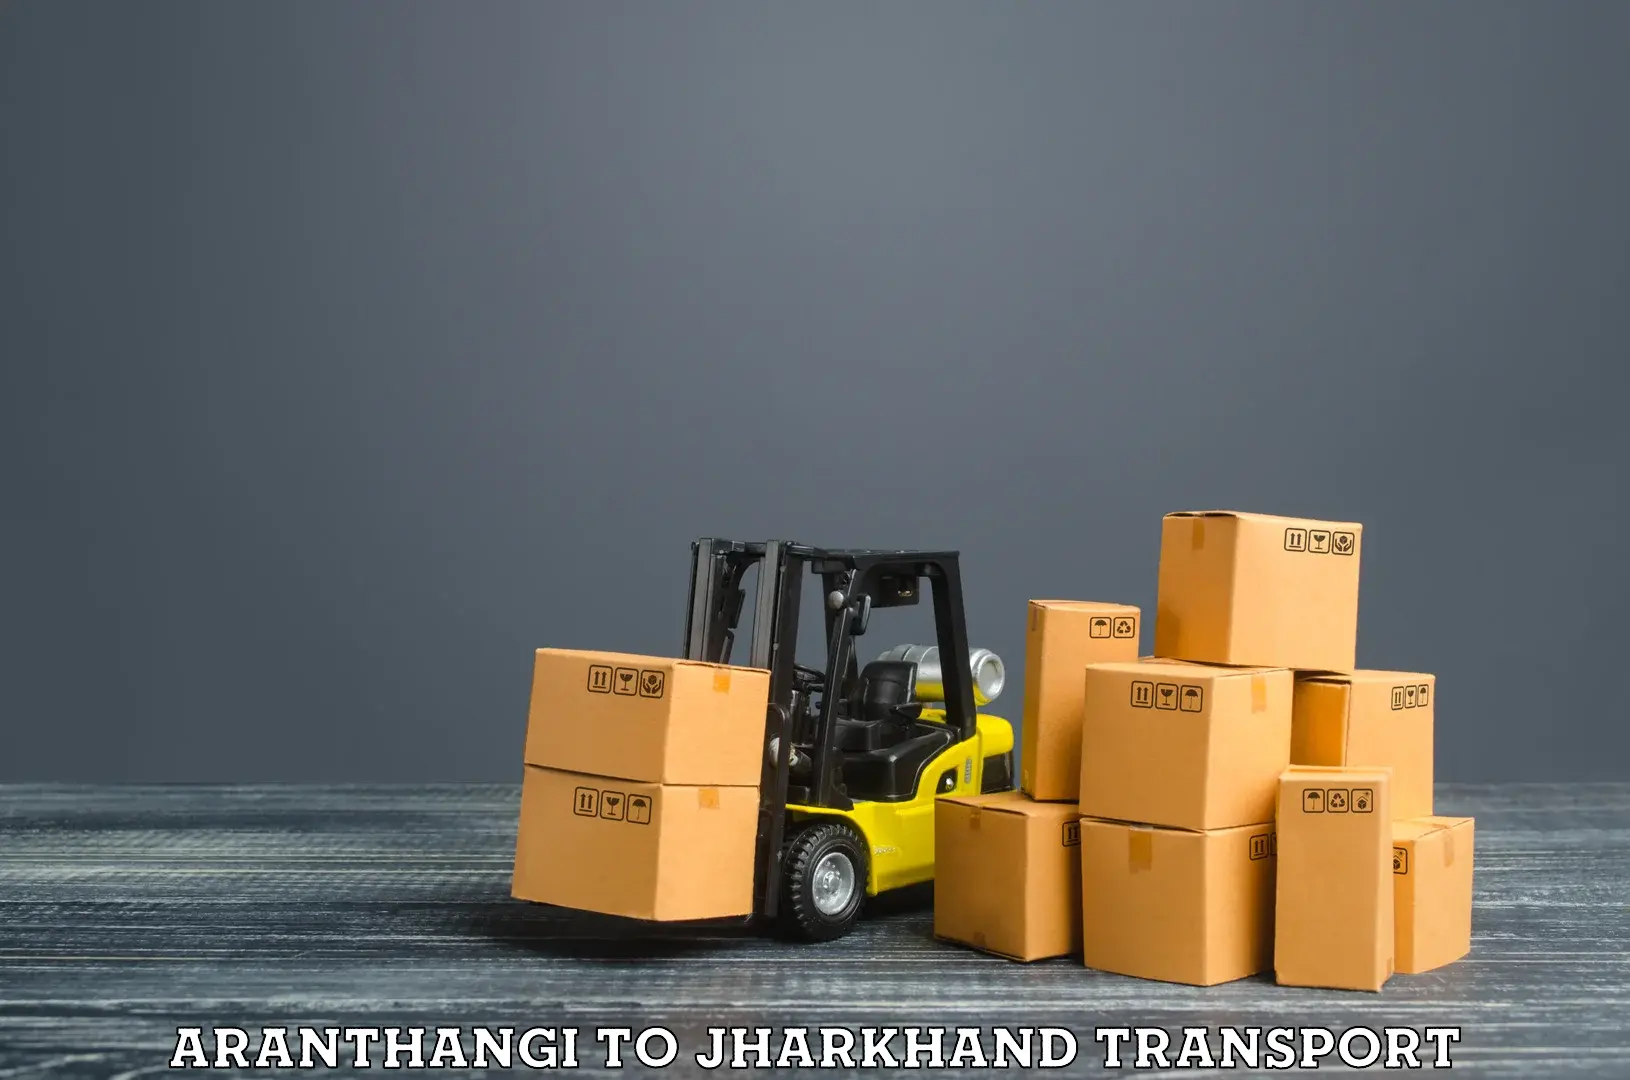 Material transport services Aranthangi to Barki Saria